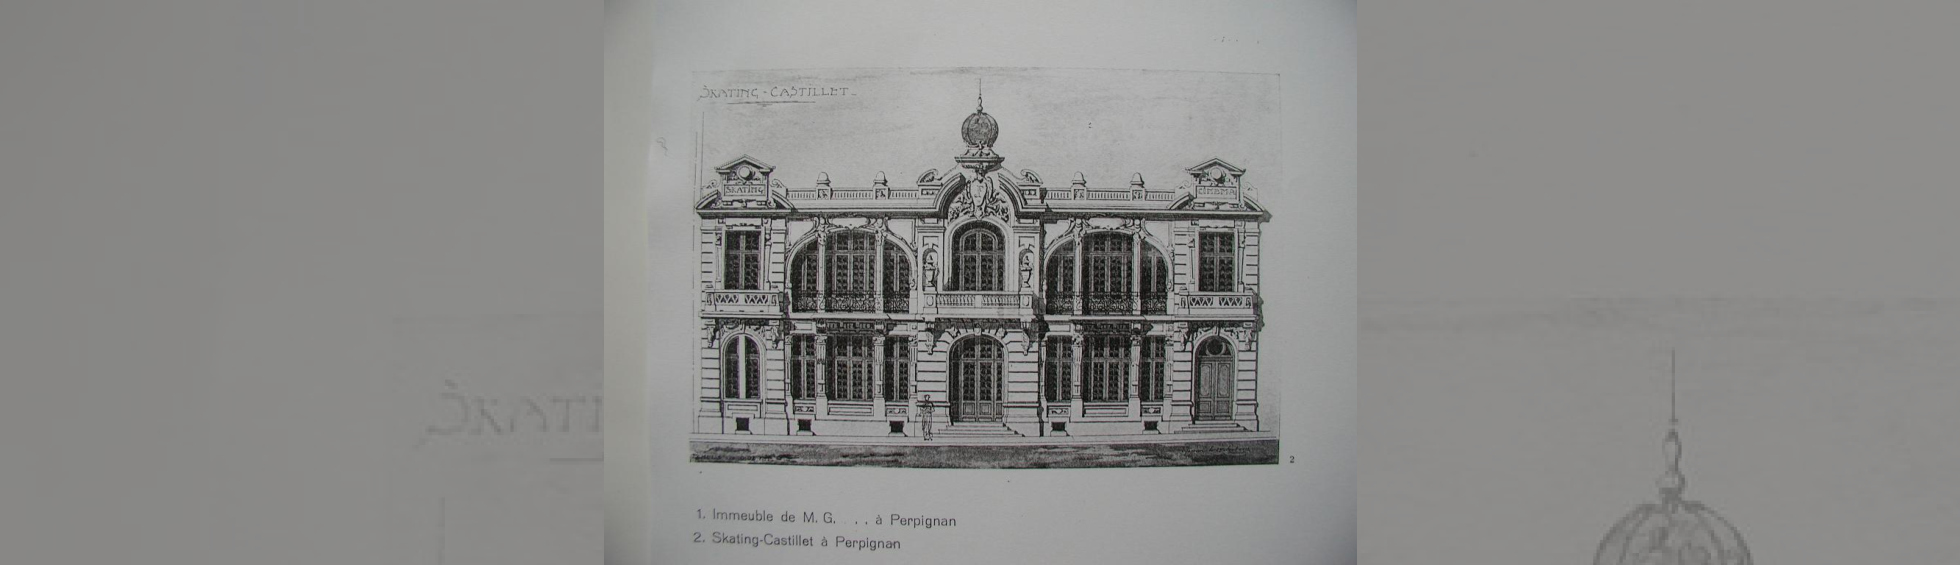 Plan:S'inspirant des façades d'opéra:2 grandes baies avec colonnes et 3 éléments en saille